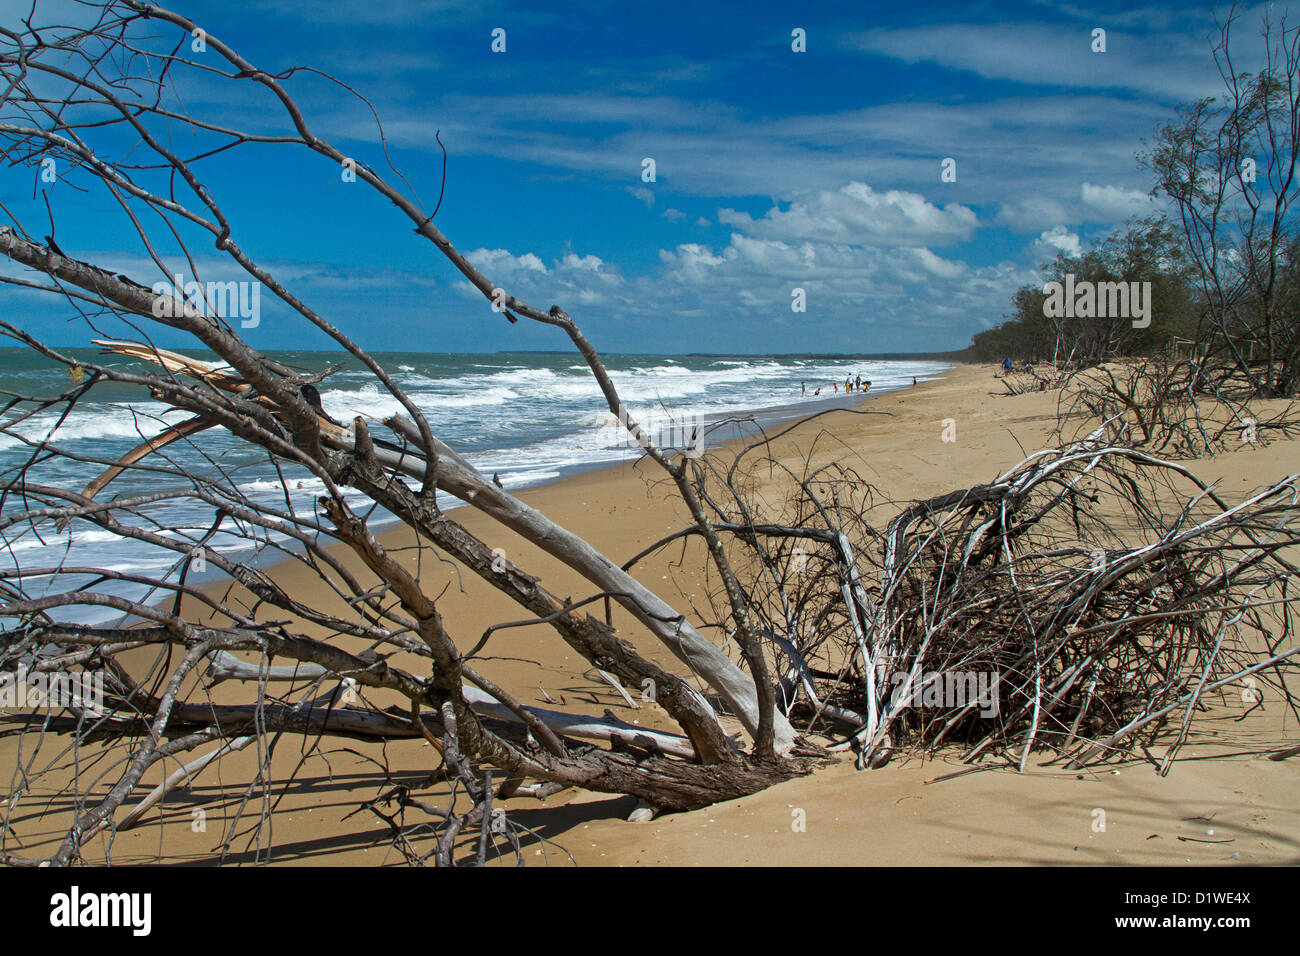 Plage avec des arbres morts près de l'eau bleue de l'océan - preuve visible de la montée du niveau de la mer et le changement climatique Banque D'Images